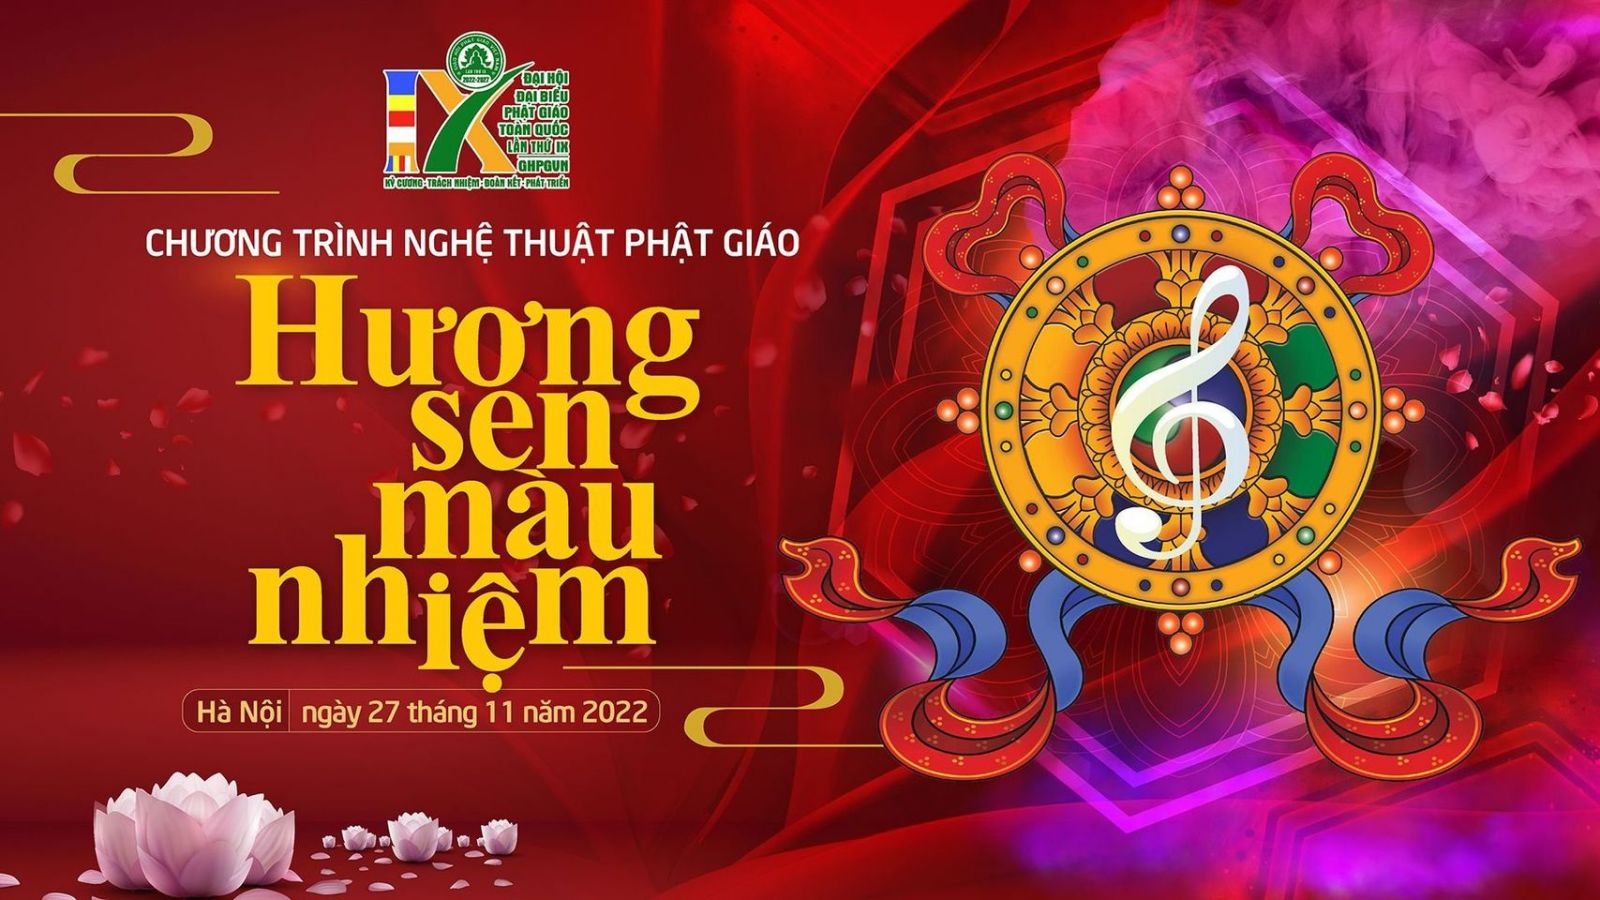 Trực tiếp: Chương trình Đại Nhạc Hội Chào mừng Đại Hội Phật Giáo Toàn Quốc lần thứ IX - Nhiệm kỳ 2022 - 2027